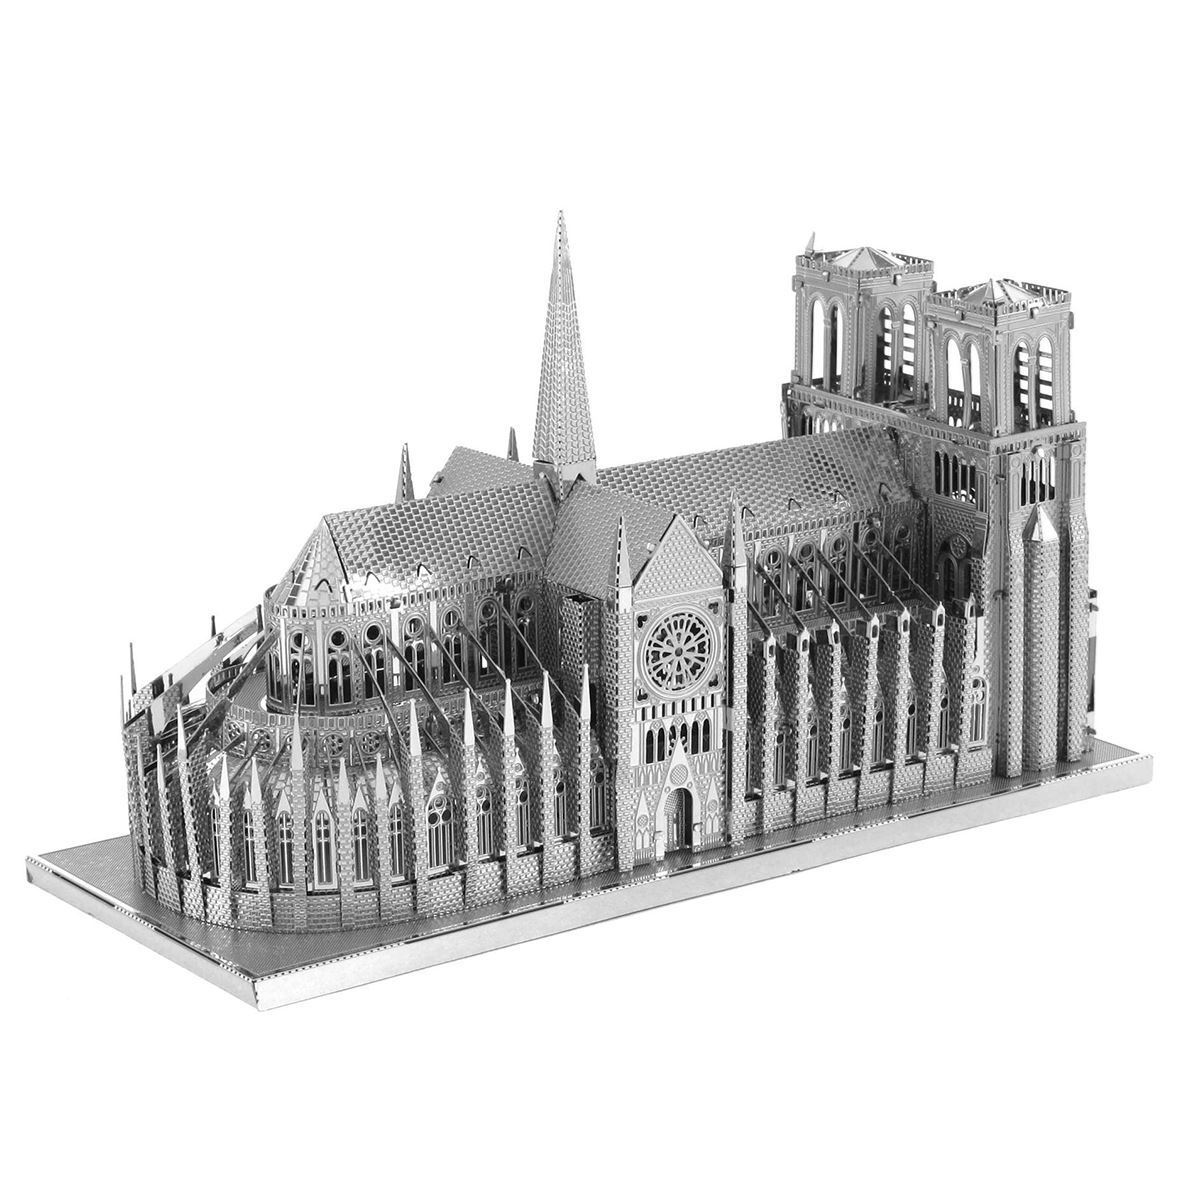 Fascinations Iconx NOTRE DAME de PARIS 3D Metal Earth Laser Cut Model Puzzle Kit 